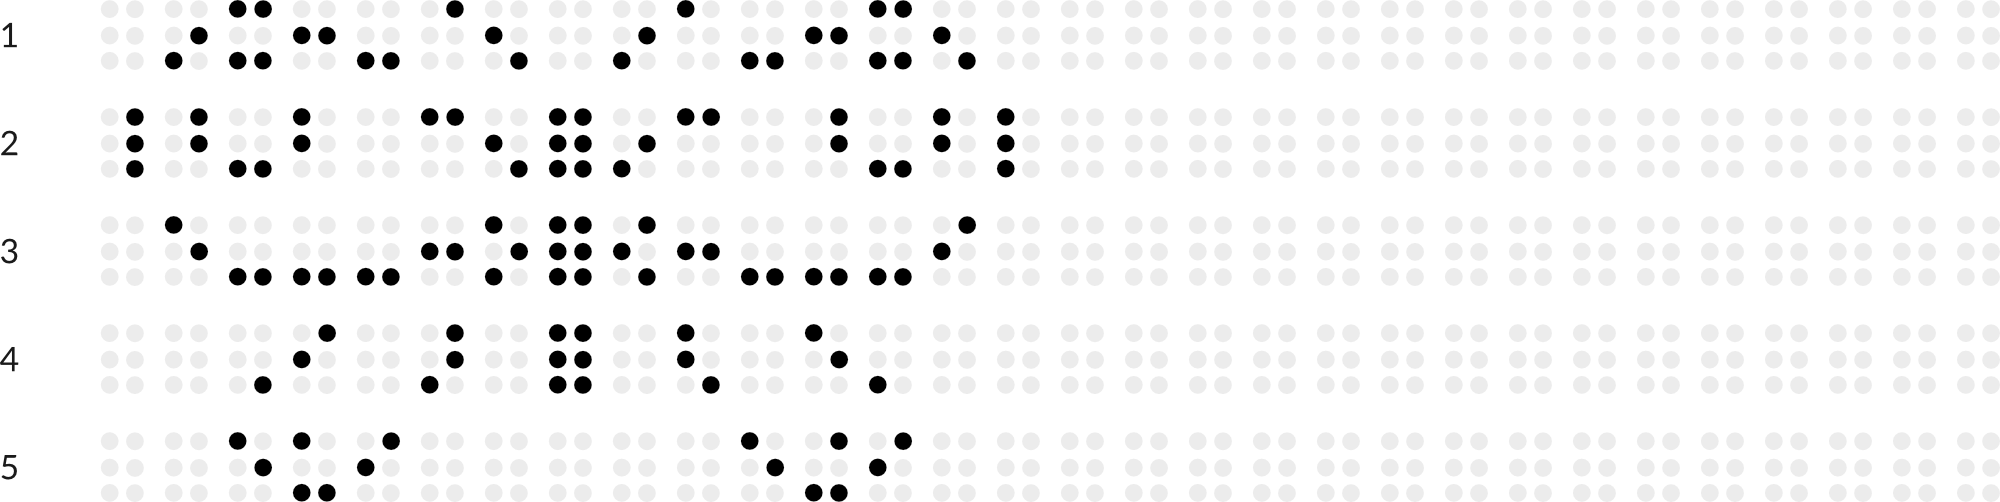 Braillebild mit Raster: Schmetterling